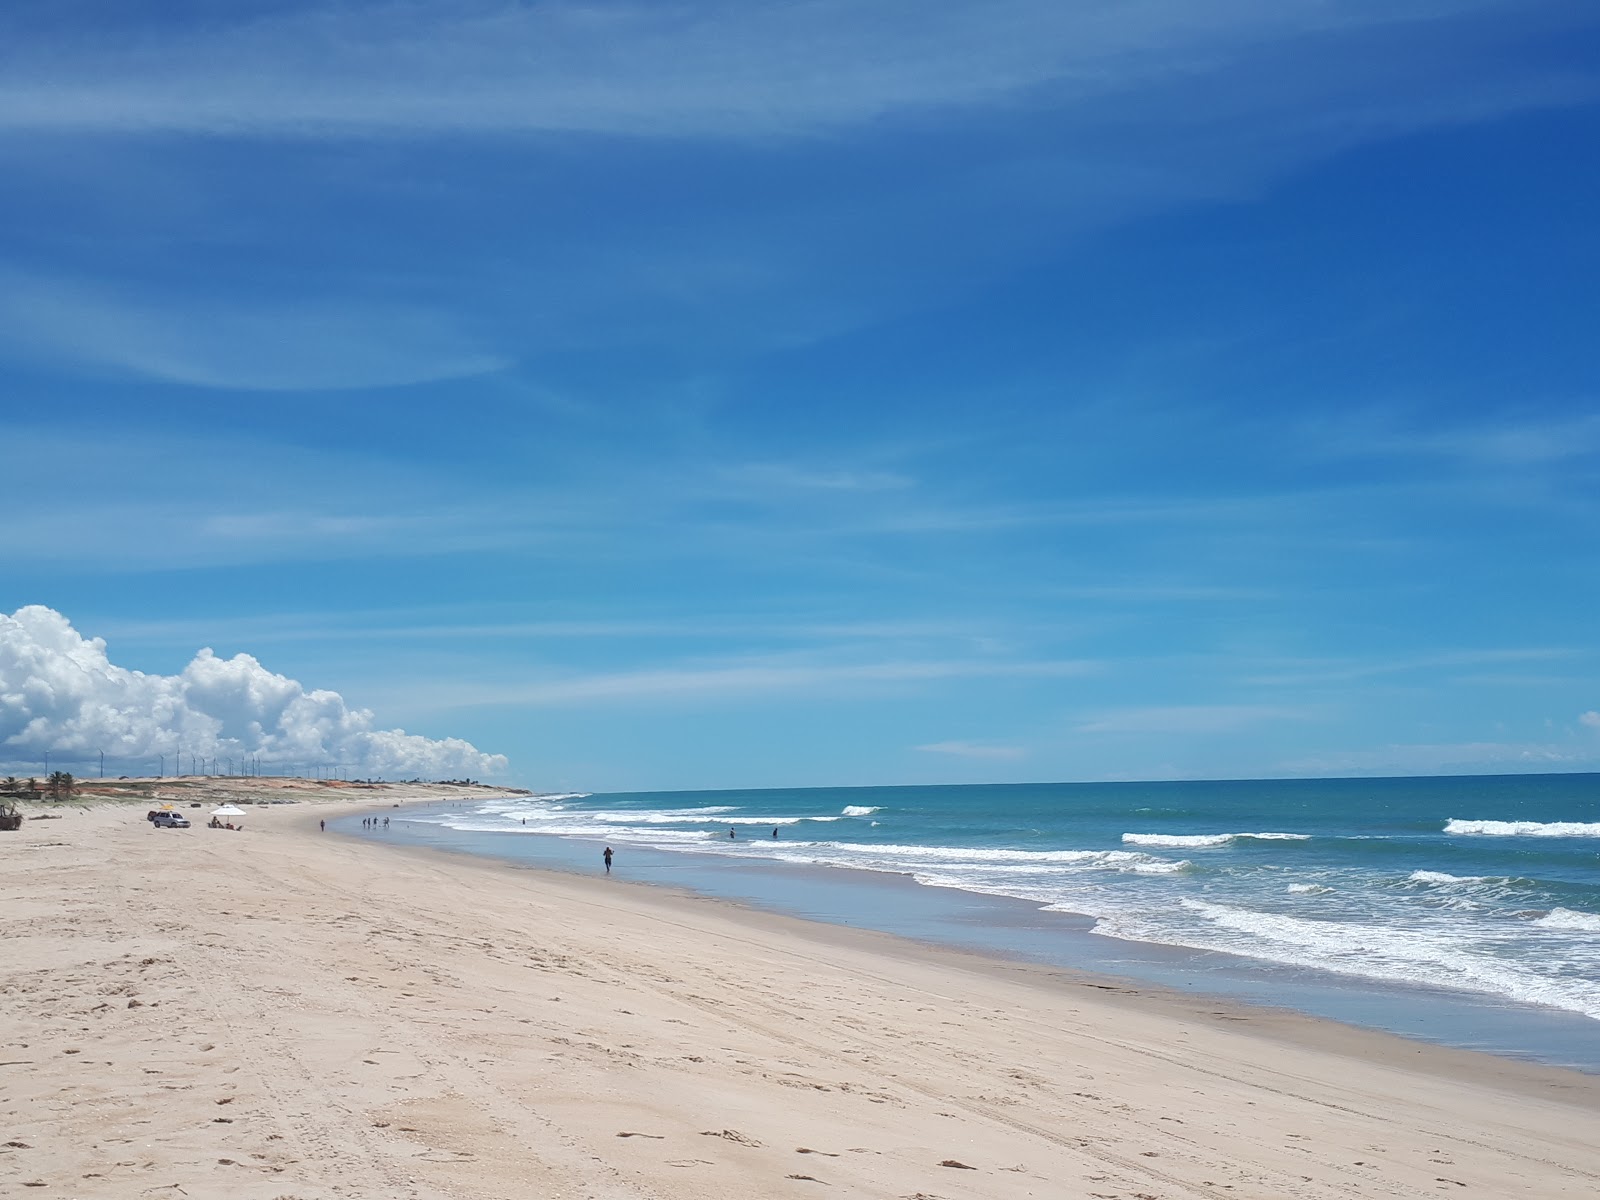 Fotografie cu Praia do Uruau cu plajă spațioasă